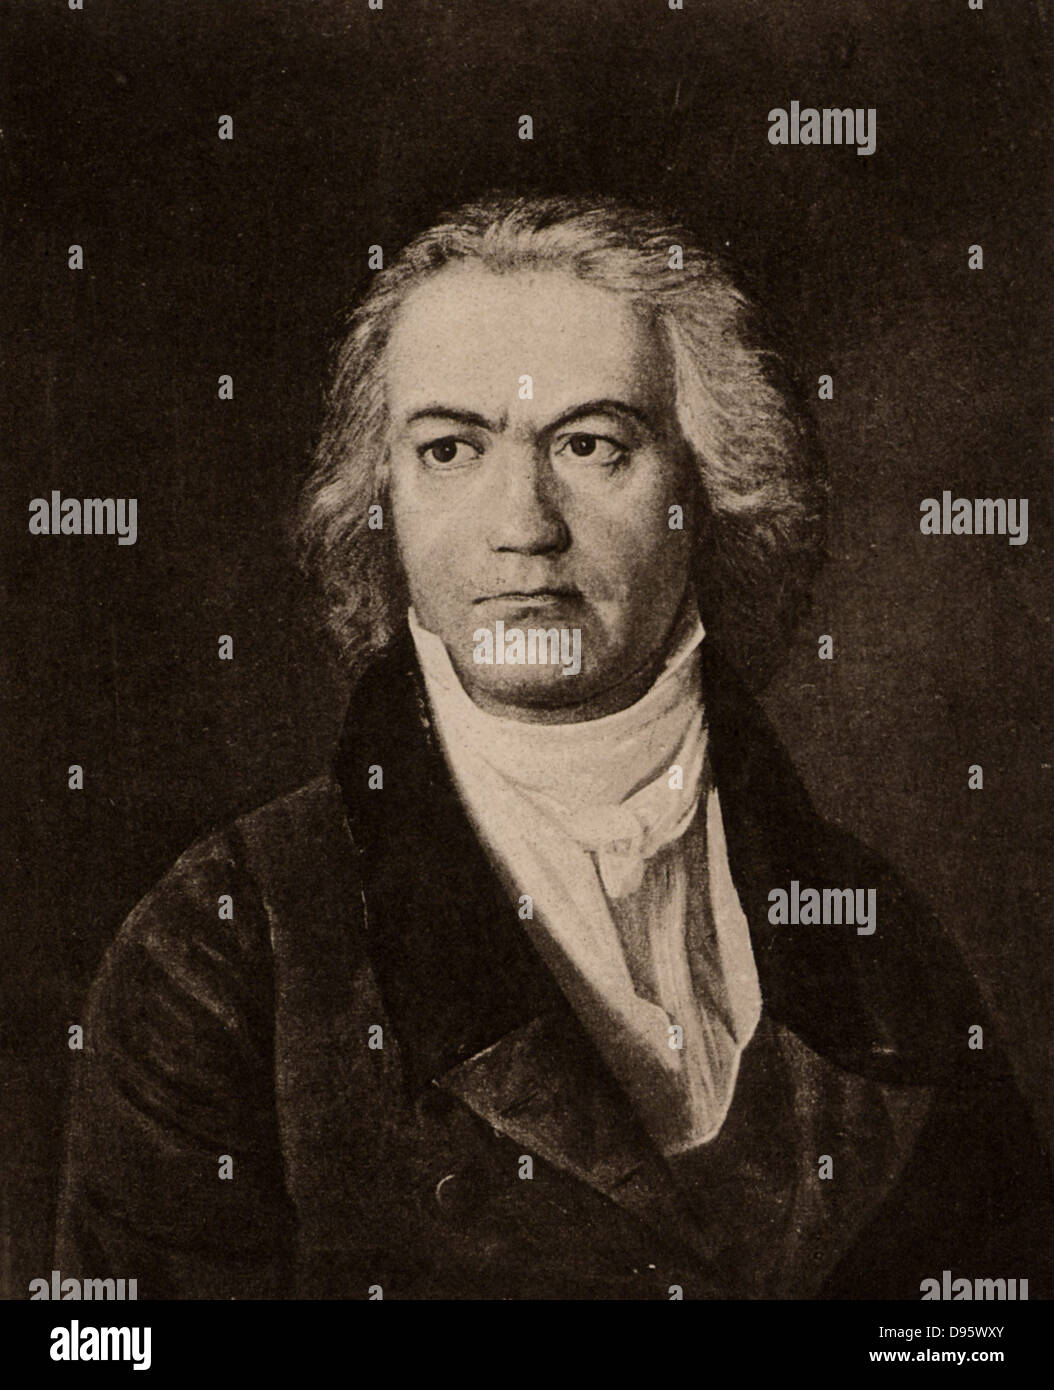 Ludwig van Beethoven (1770-1827) compositeur allemand, un pont entre les styles classique et romantique. Lithographie. Banque D'Images